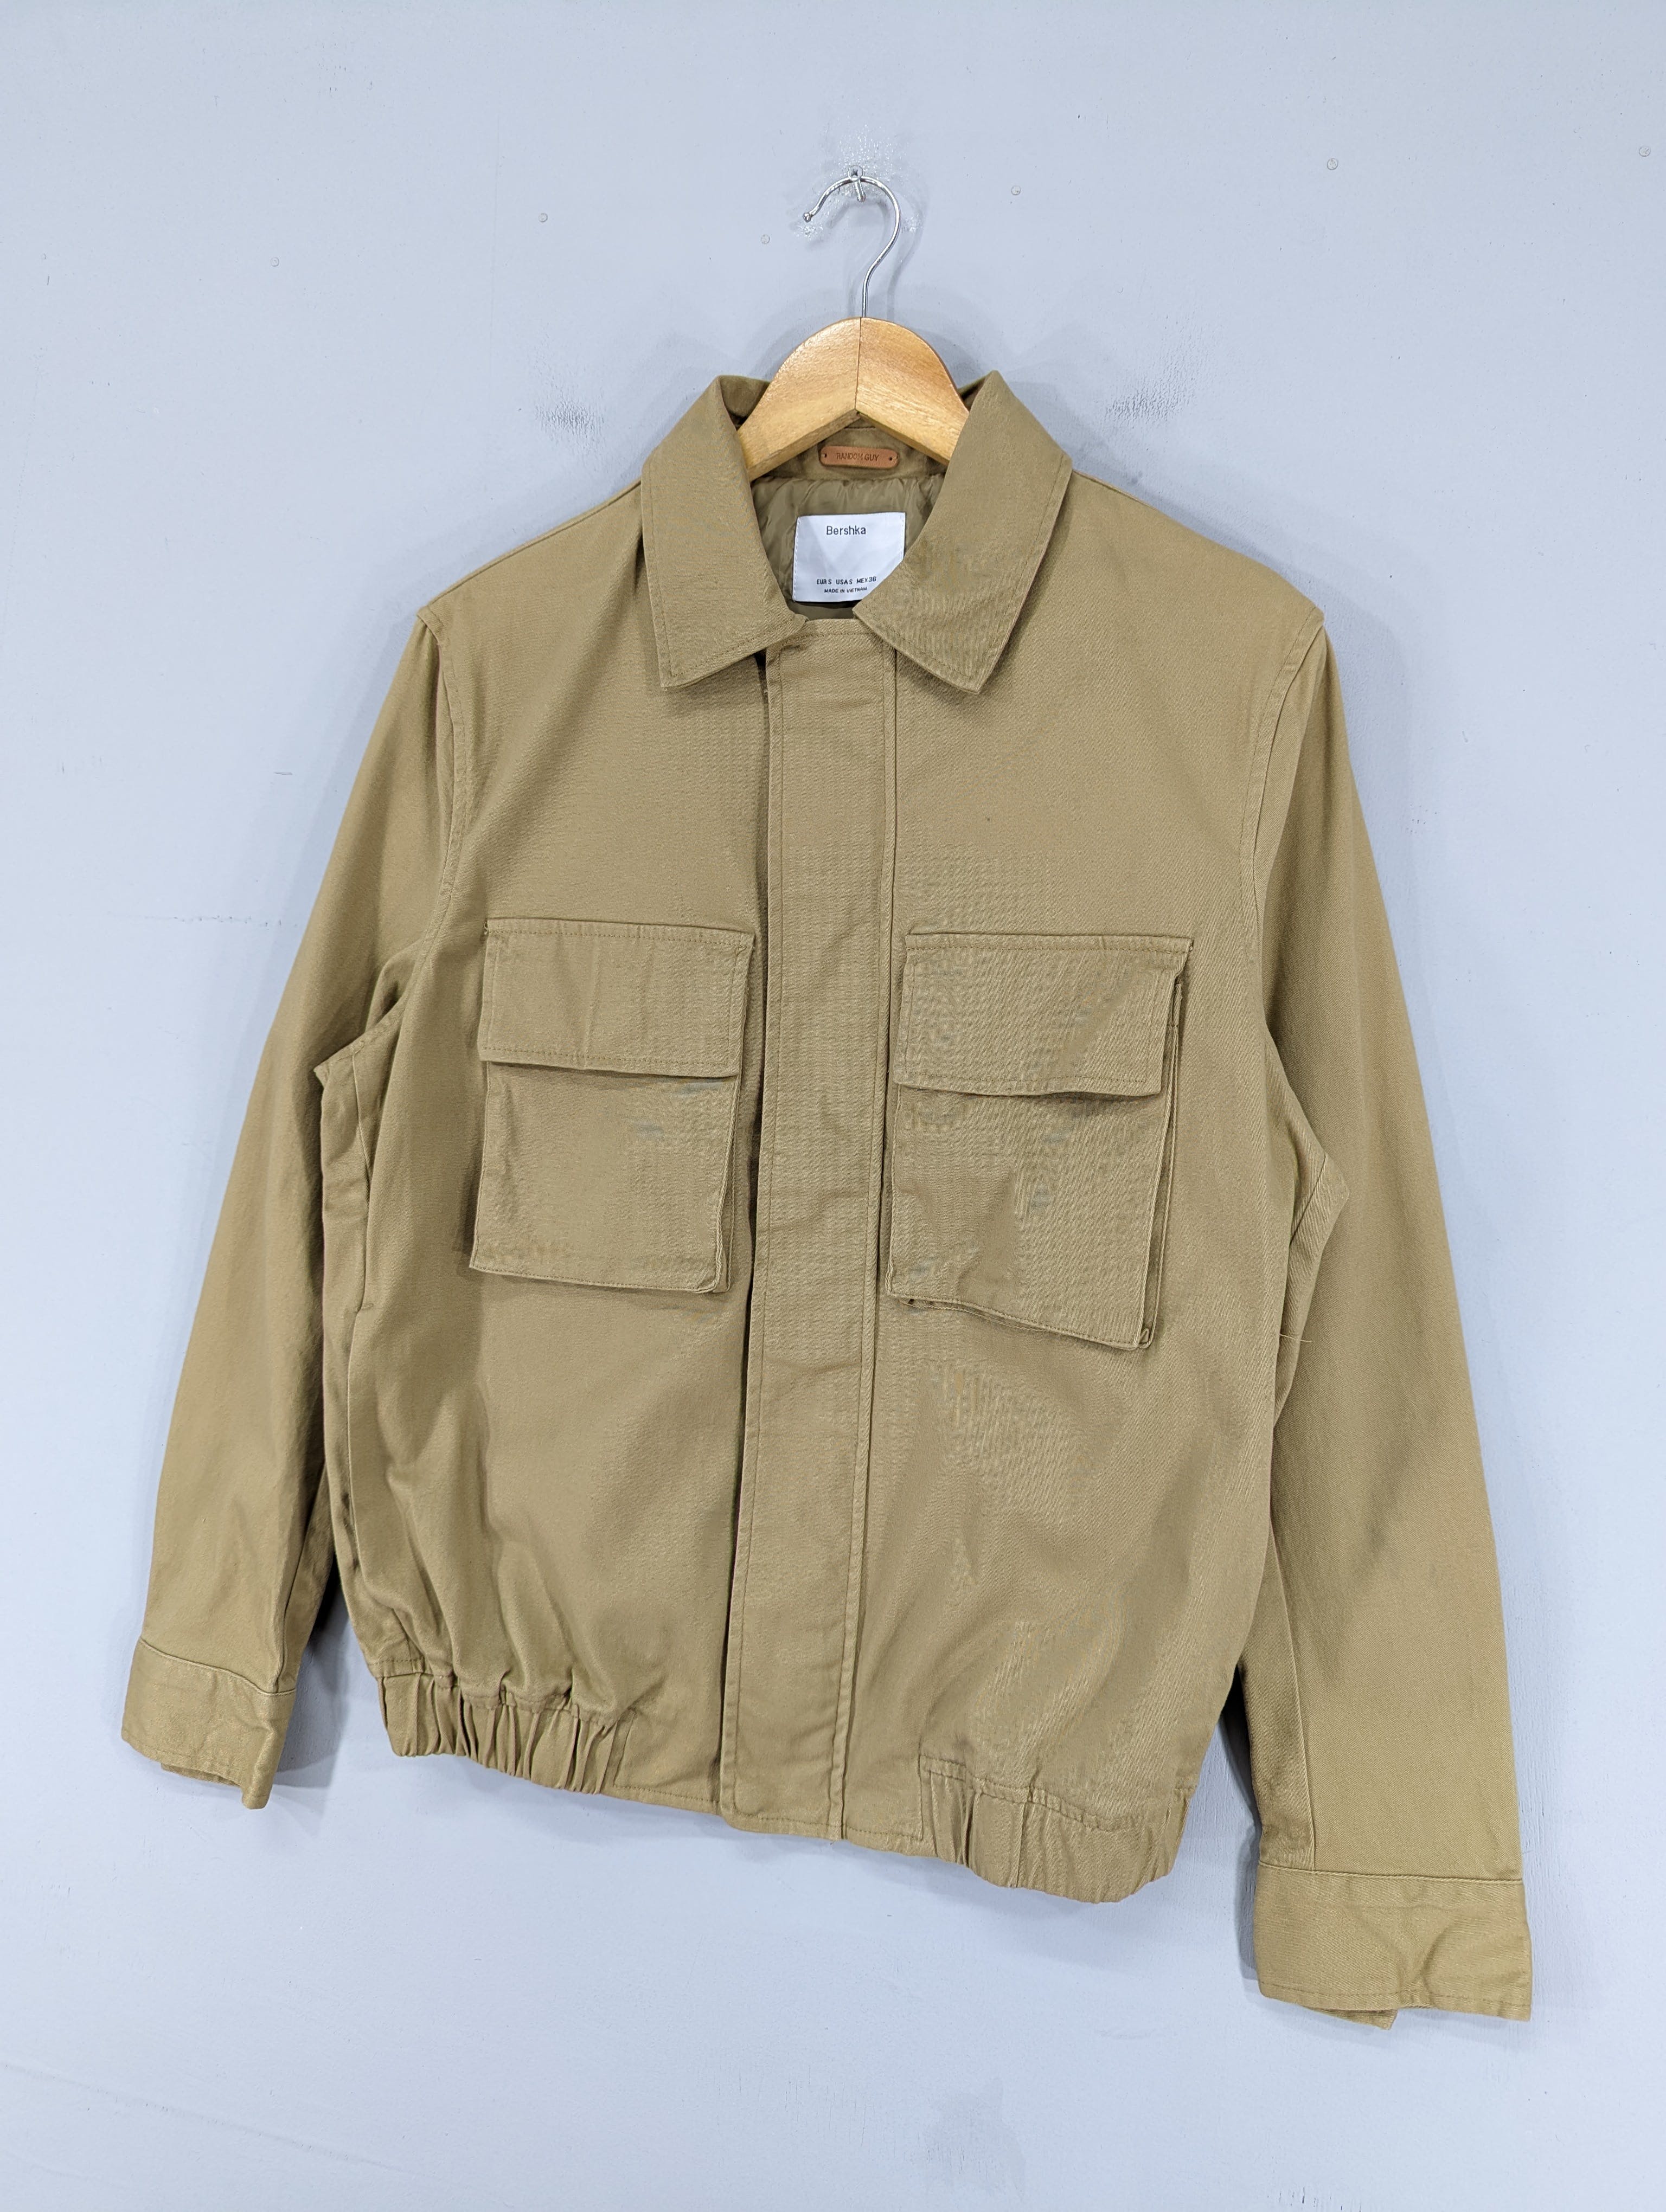 💥RARE💥Bershka Double Pocket Military Style Jacket